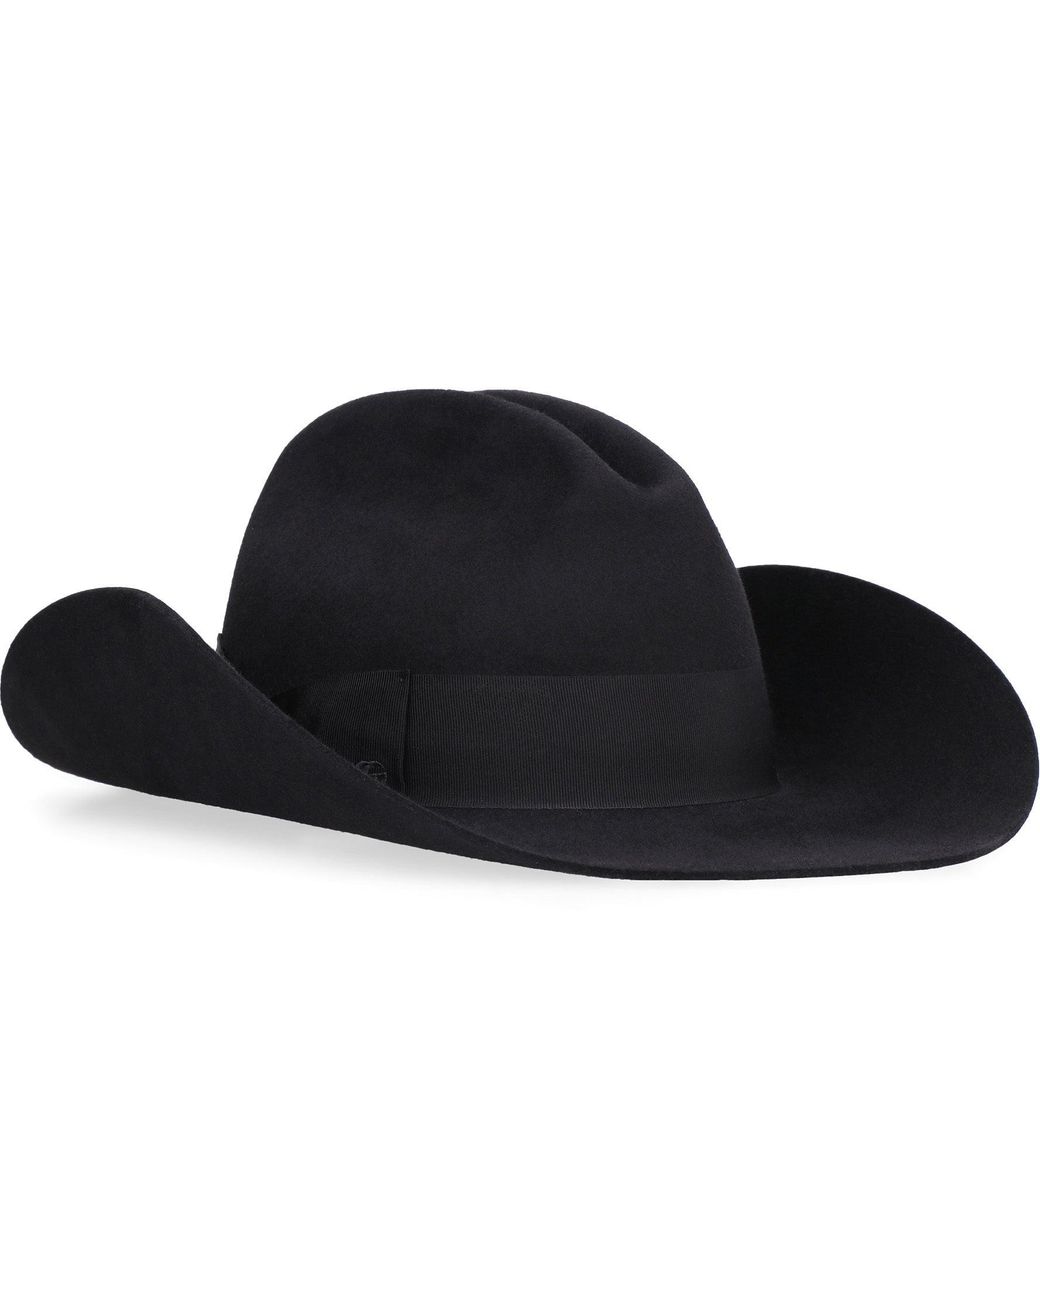 Gucci Felt Fedora Hat in Black | Lyst